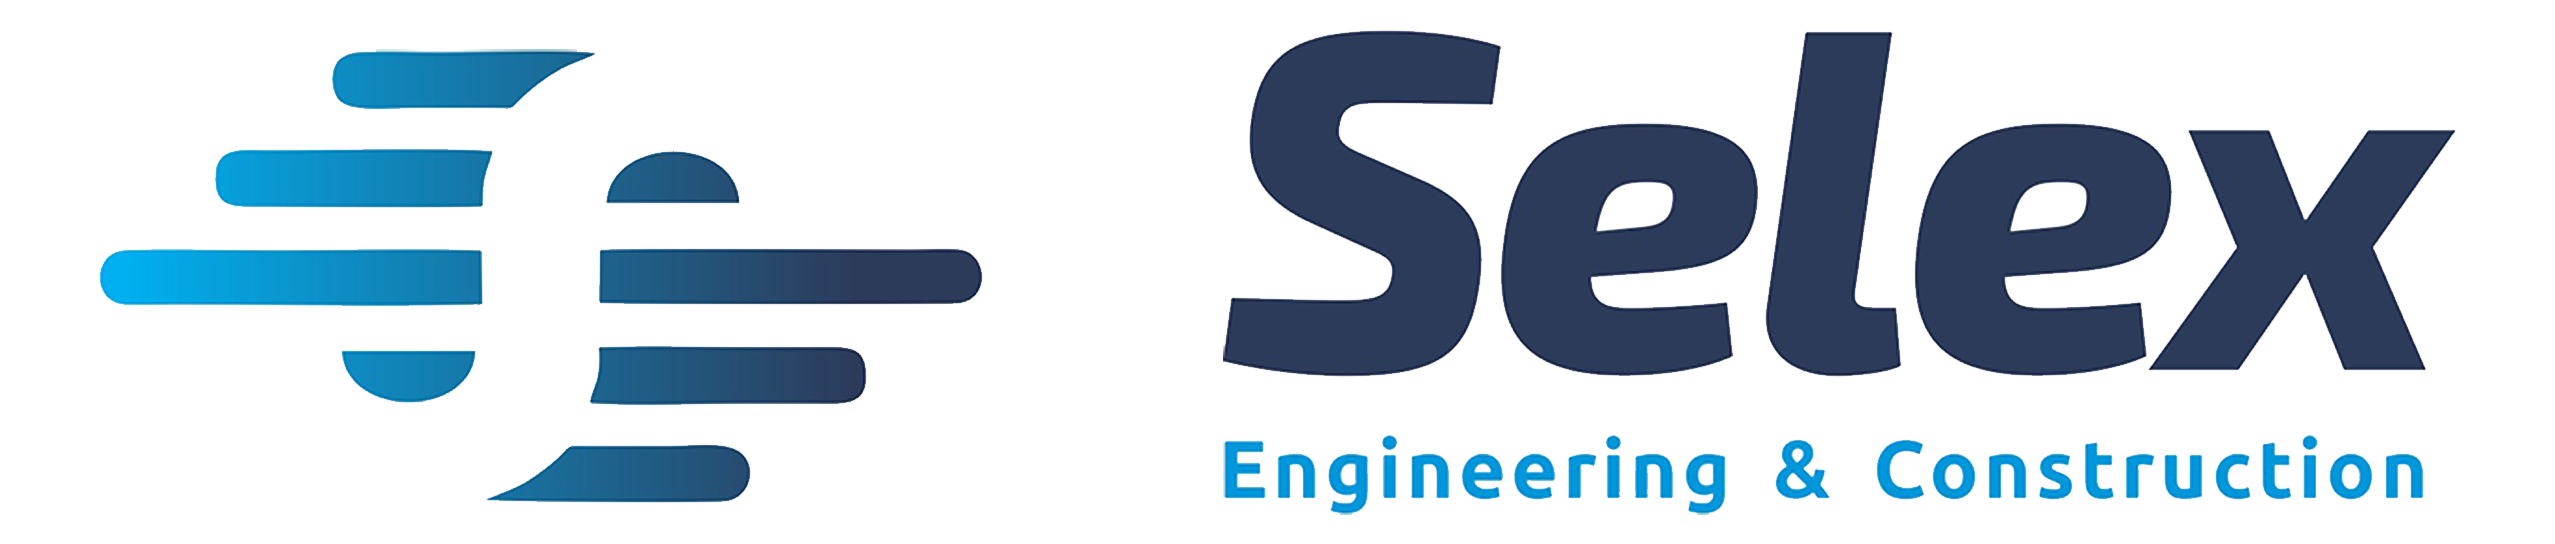 Selex Engineering